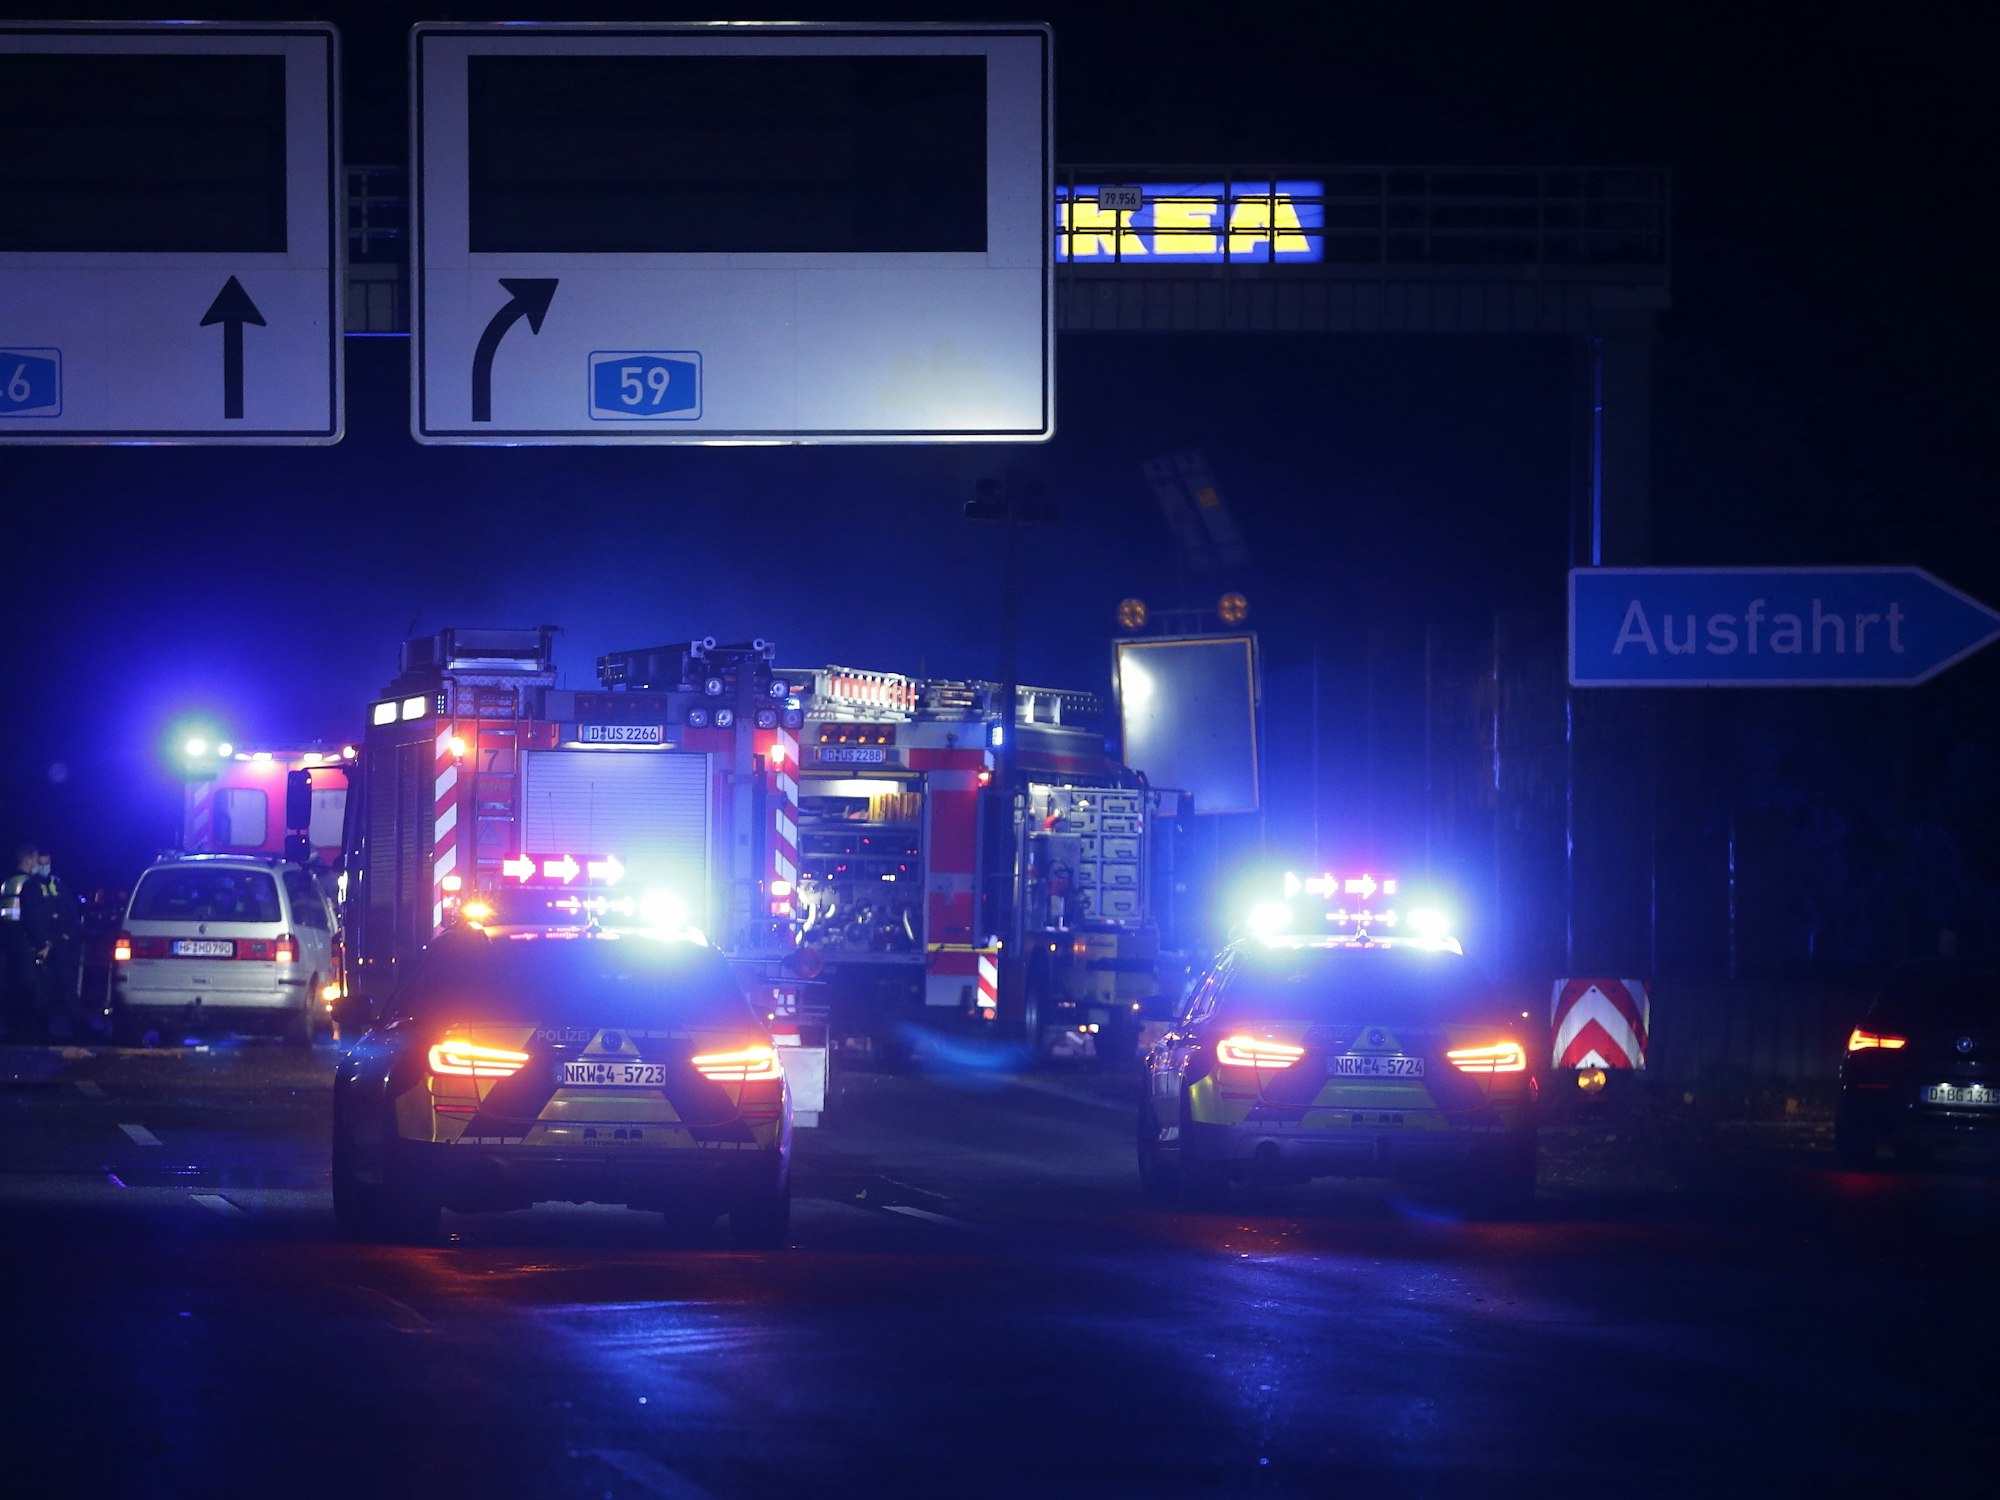 Auf der A46 bei Düsseldorf stehen mehrere Einsatzfahrzeuge von Polizei und Feuerwehr mit Blaulicht.